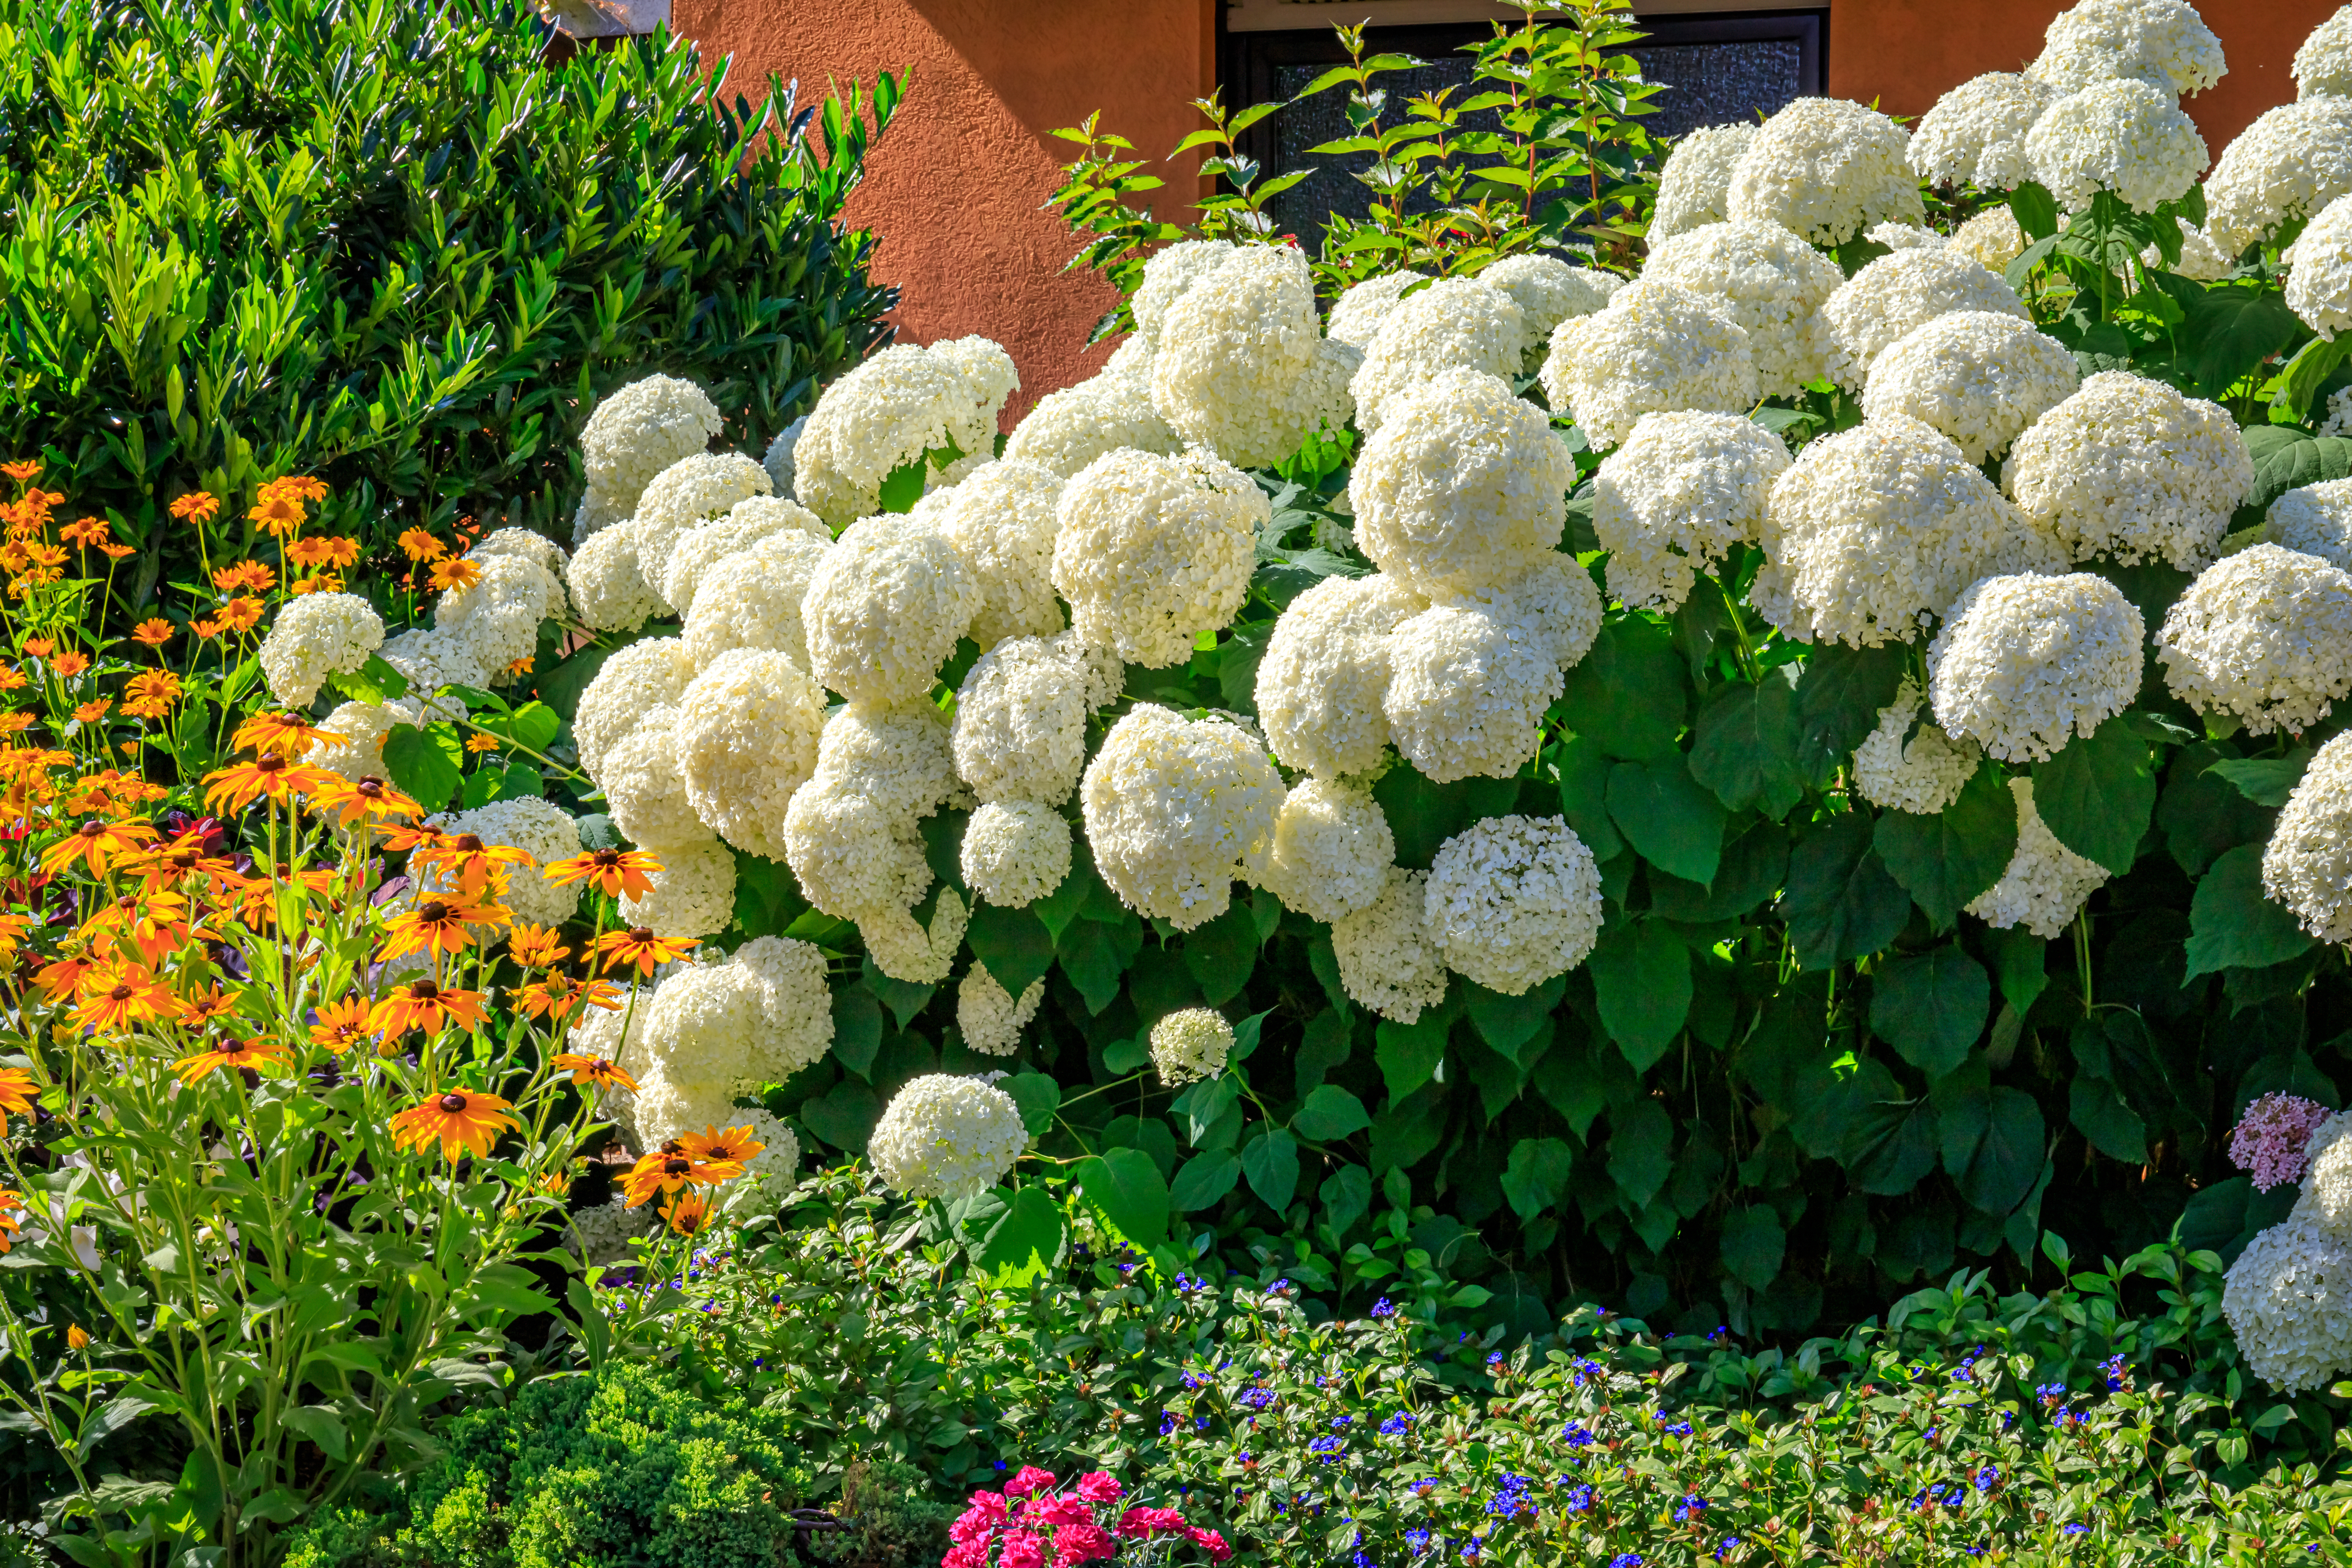 Quel bonheur de voir son jardin fleuri ! Printemps, été, automne et même hiver, fleurissez votre jardin avec les plus belles fleurs blanches. Copyright (c) 2021 nnattalli/Shutterstock.